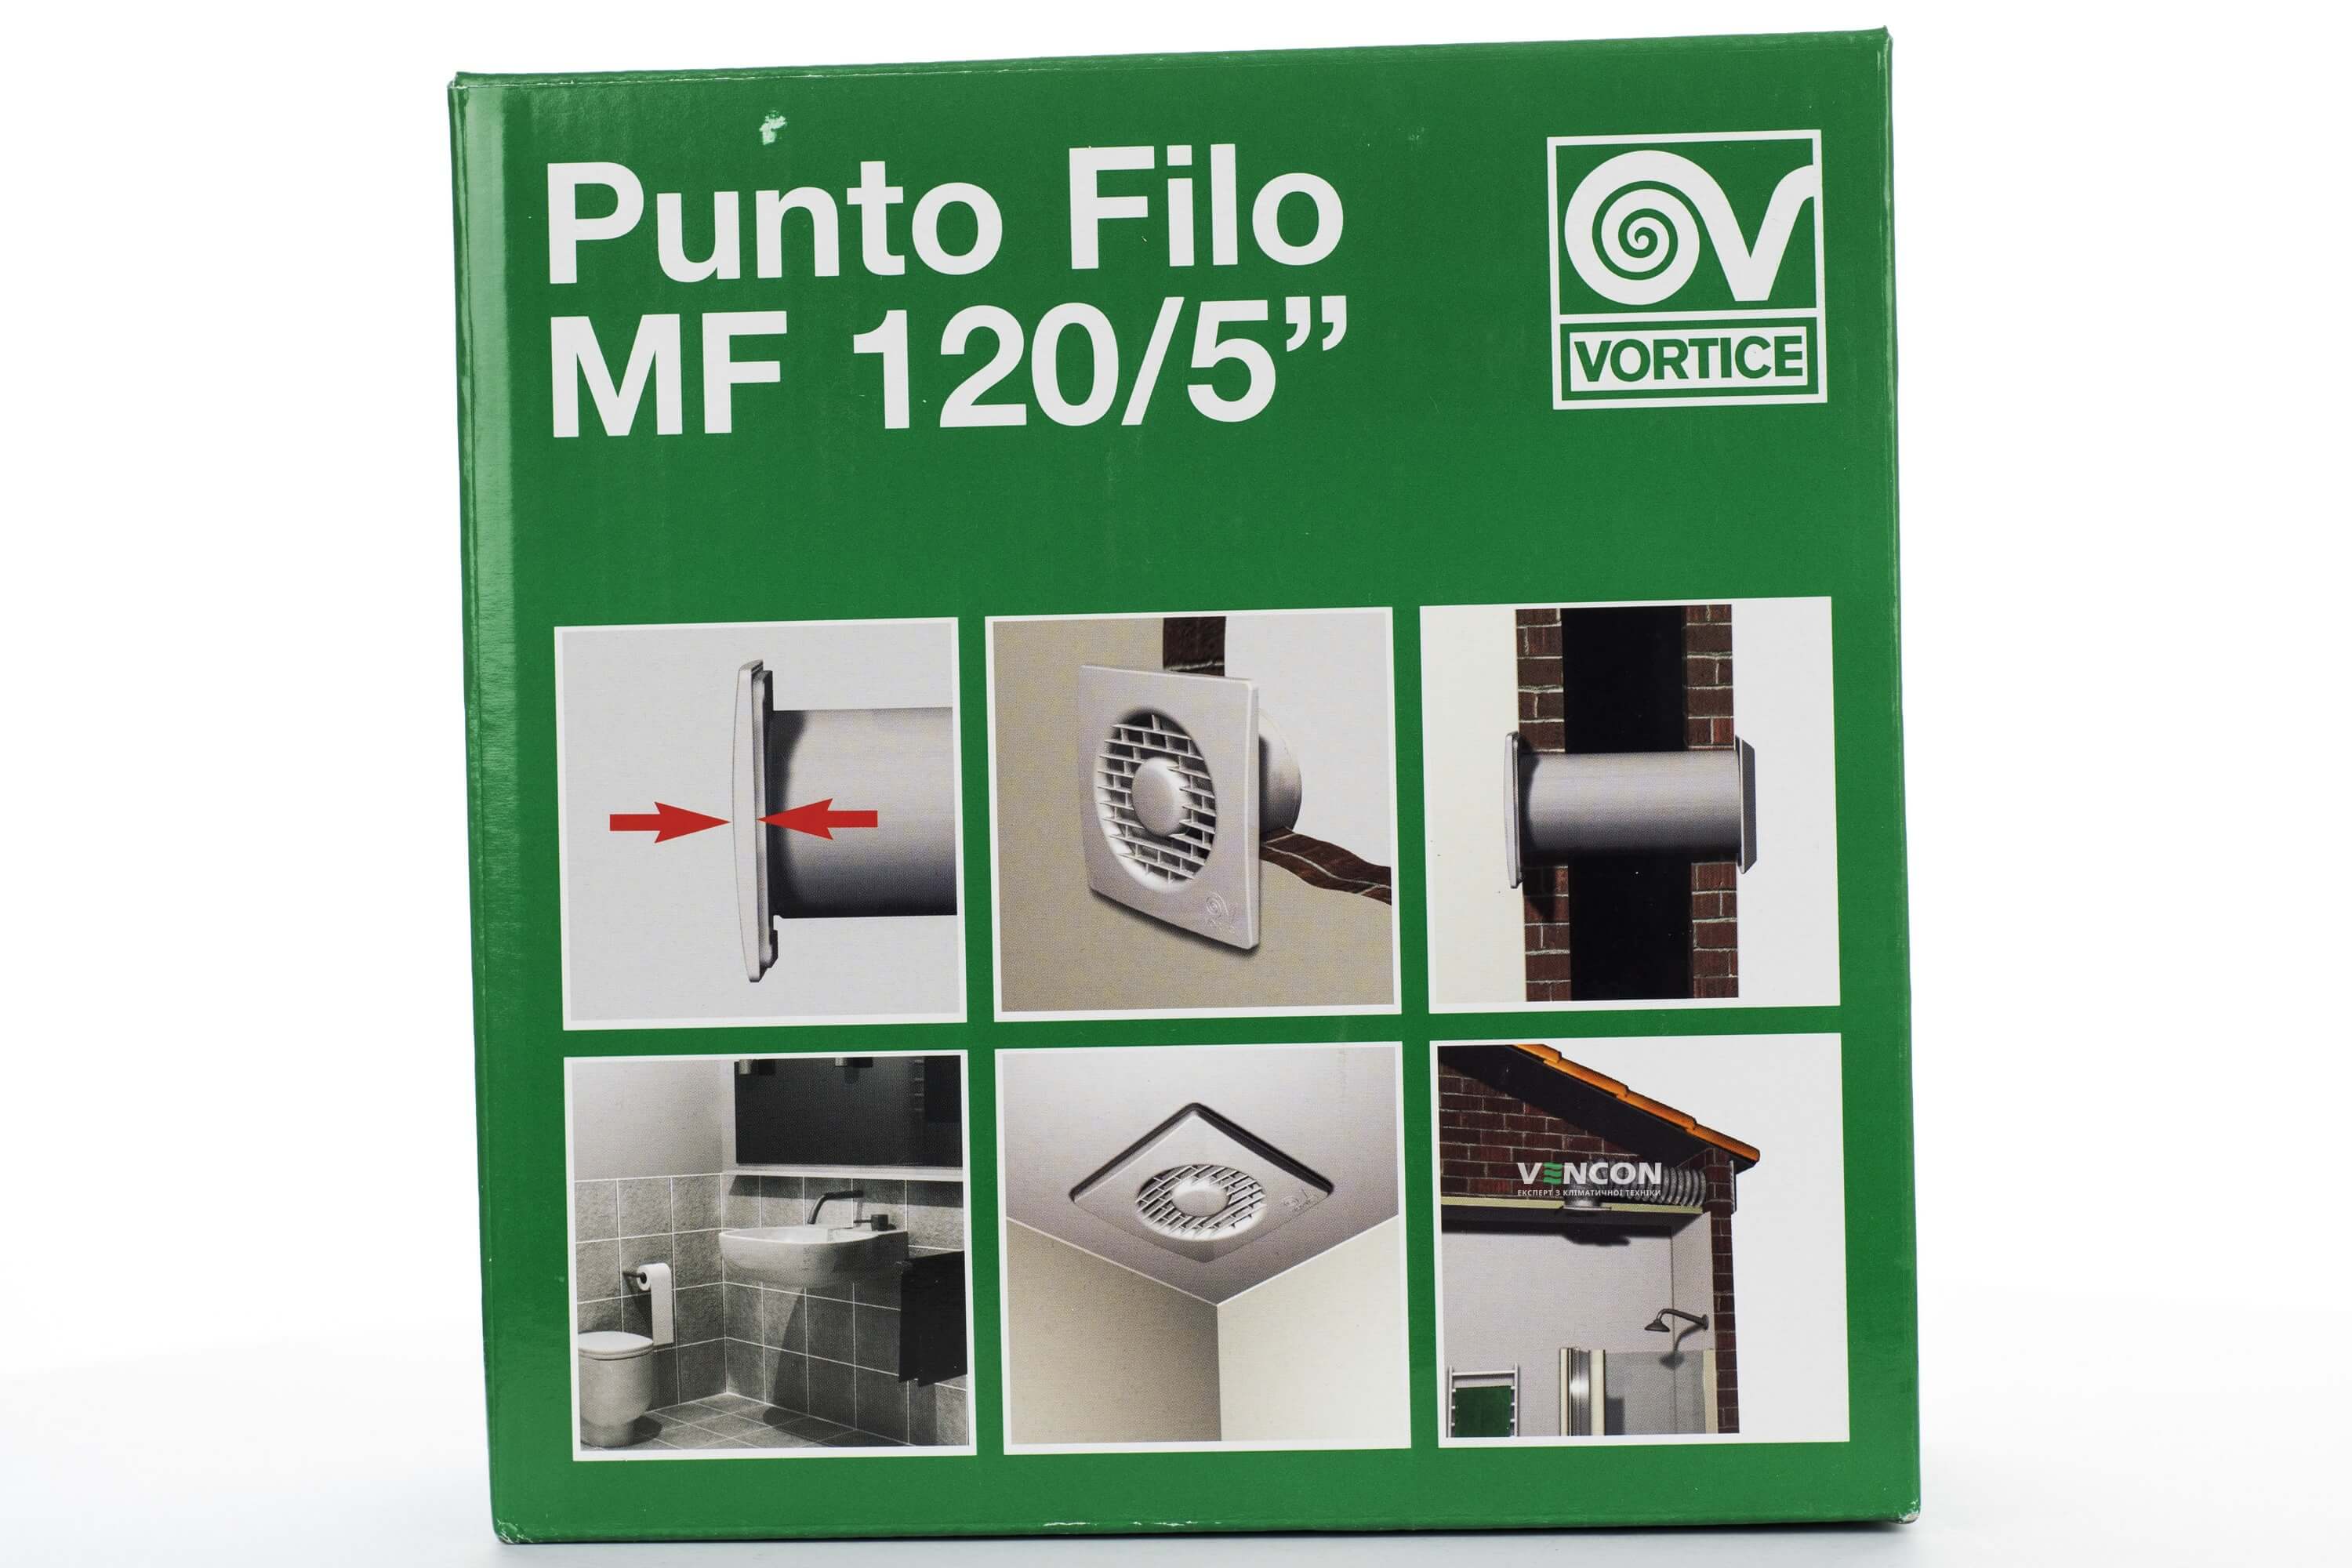 Вытяжной вентилятор Vortice Punto Filo MF 120/5" цена 2646.00 грн - фотография 2